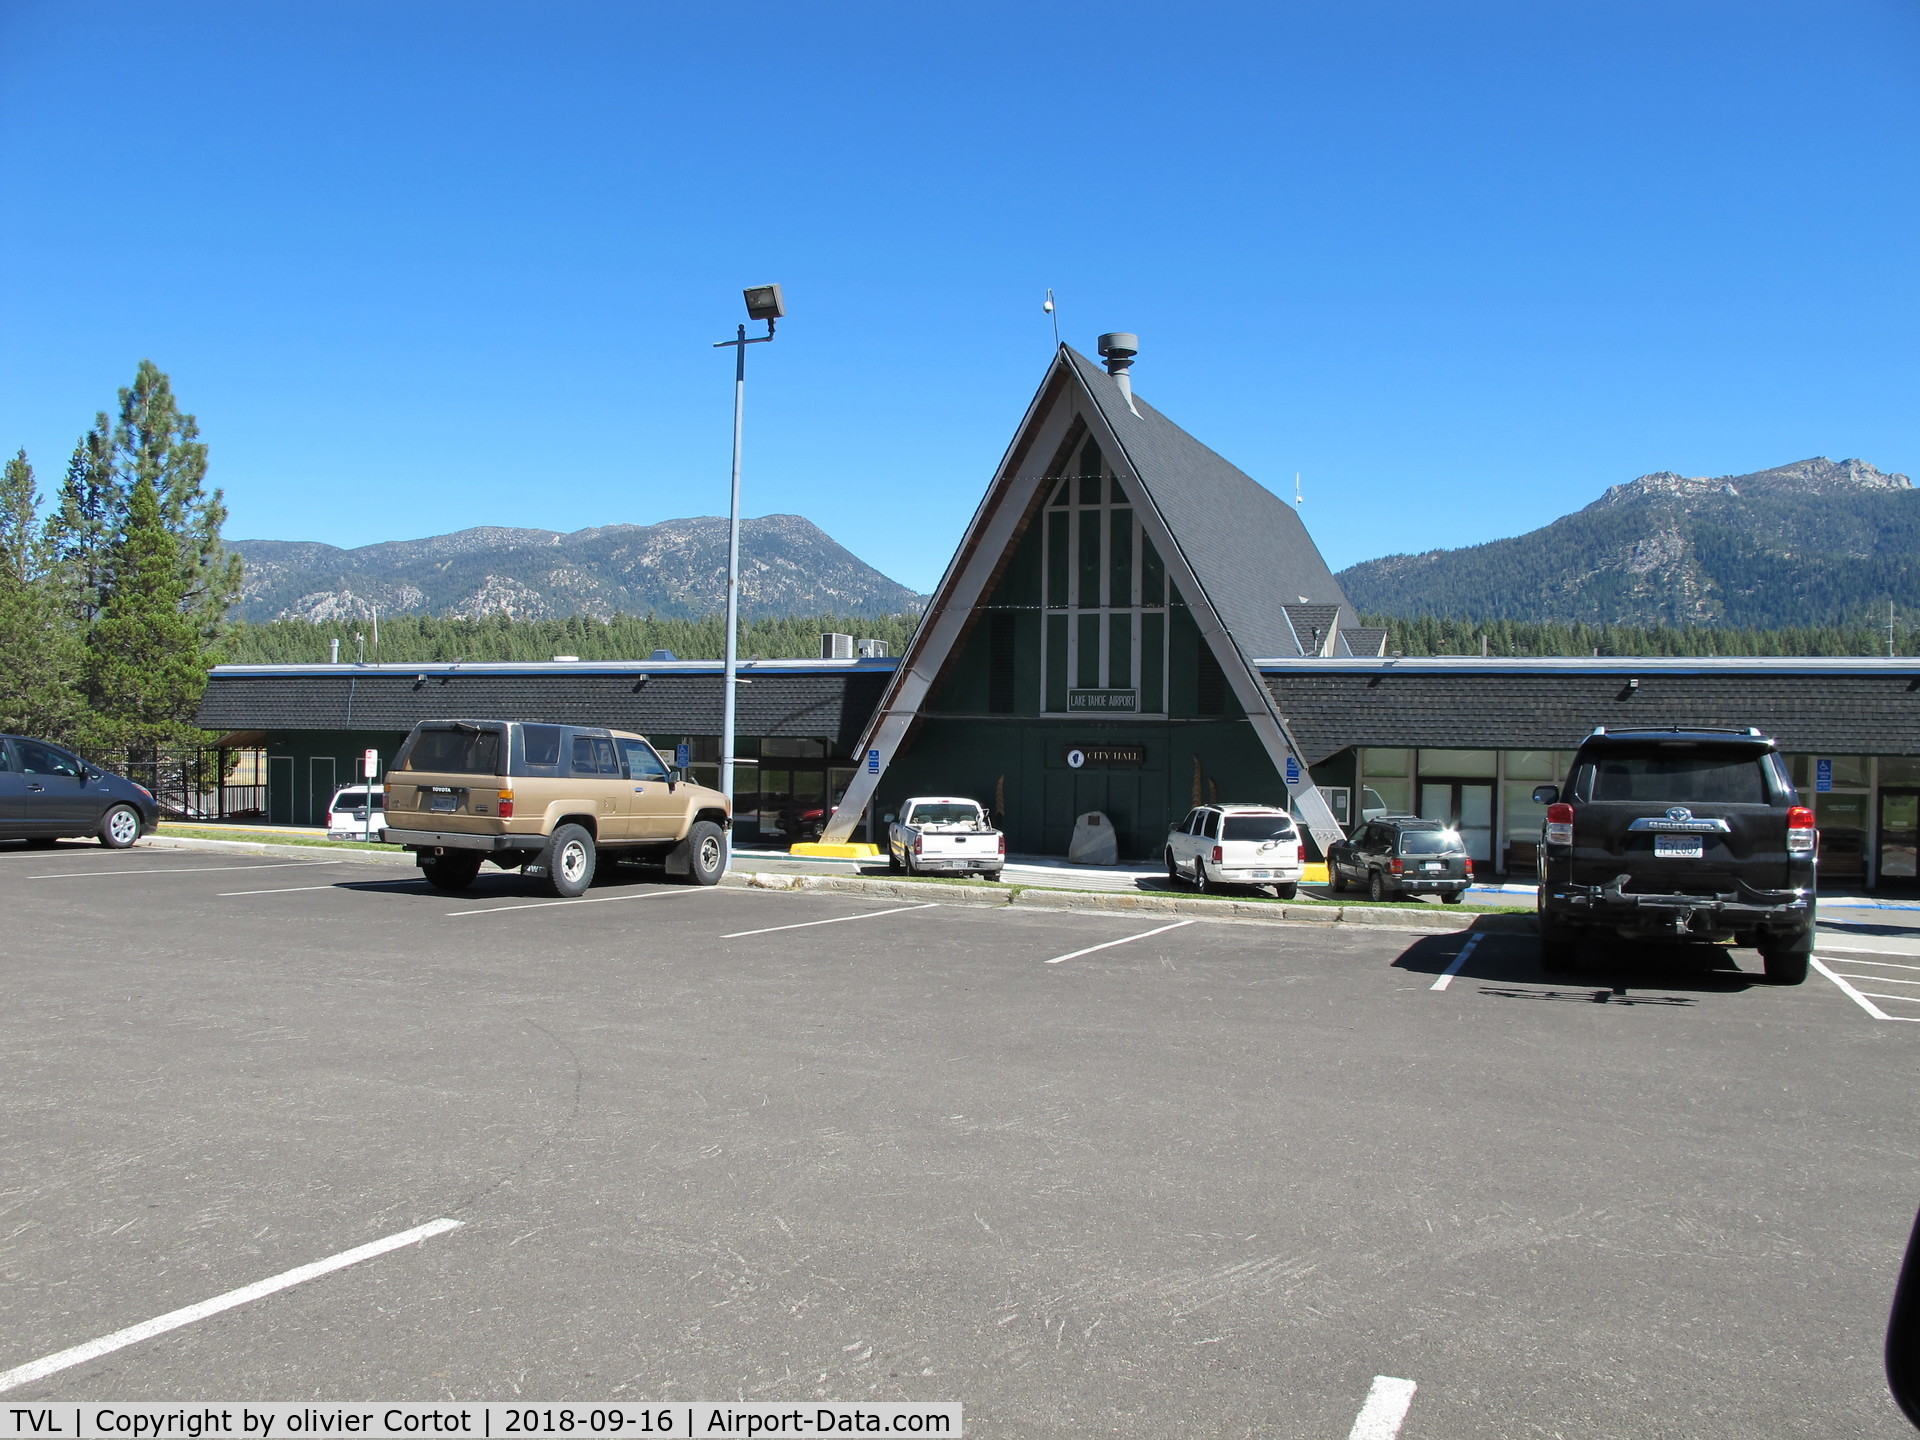 Lake Tahoe Airport (TVL) - the terminal